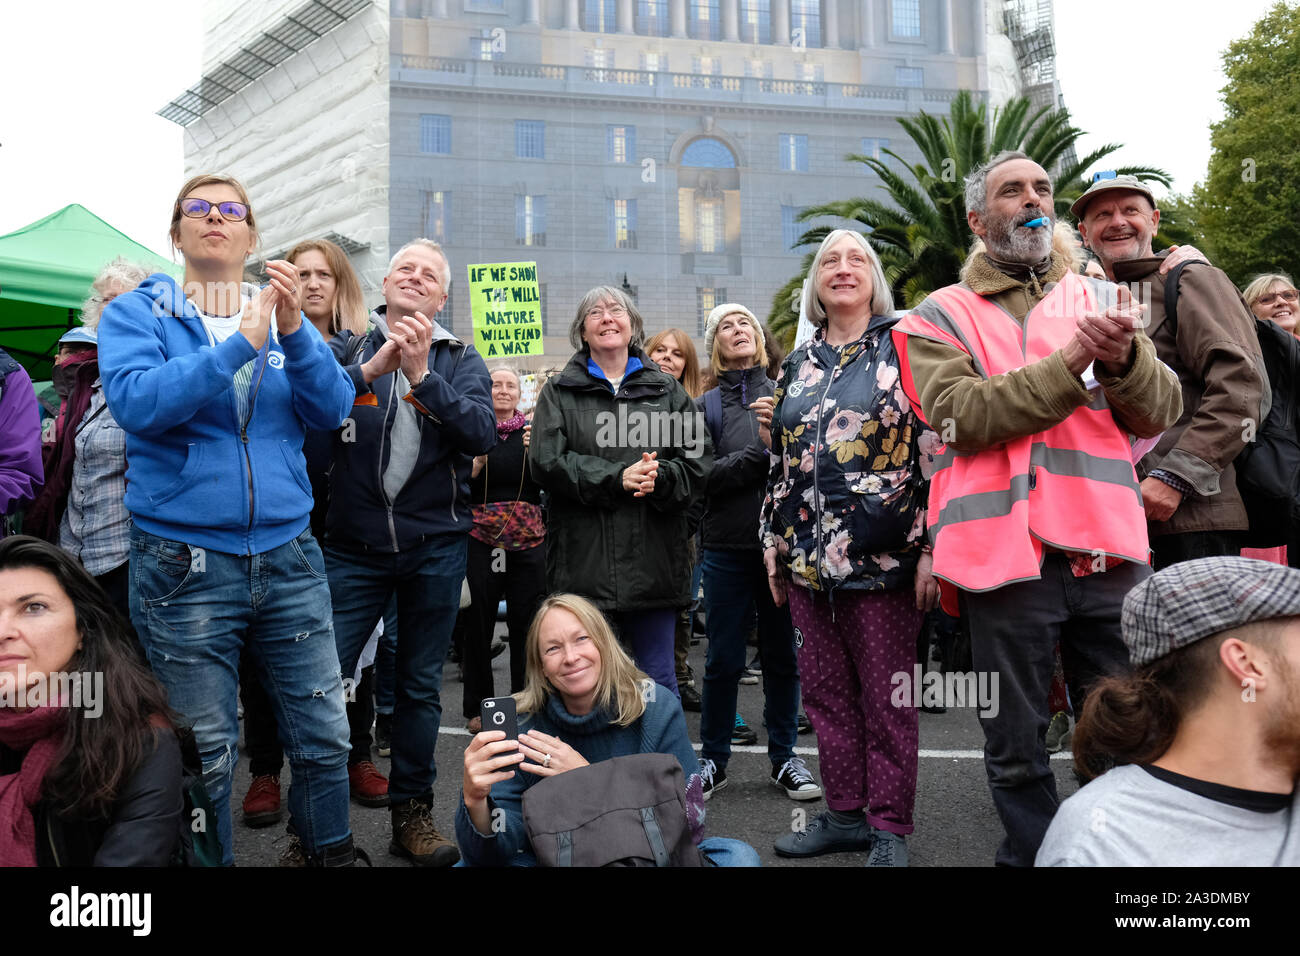 Westminster, London, UK - Montag, 7. Oktober 2019 - vom Aussterben Rebellion XR Klima Demonstranten applaudieren eine Rede, wie sie die nördliche Seite der Lambeth Brücke blockieren. Foto Steven Mai/Alamy leben Nachrichten Stockfoto